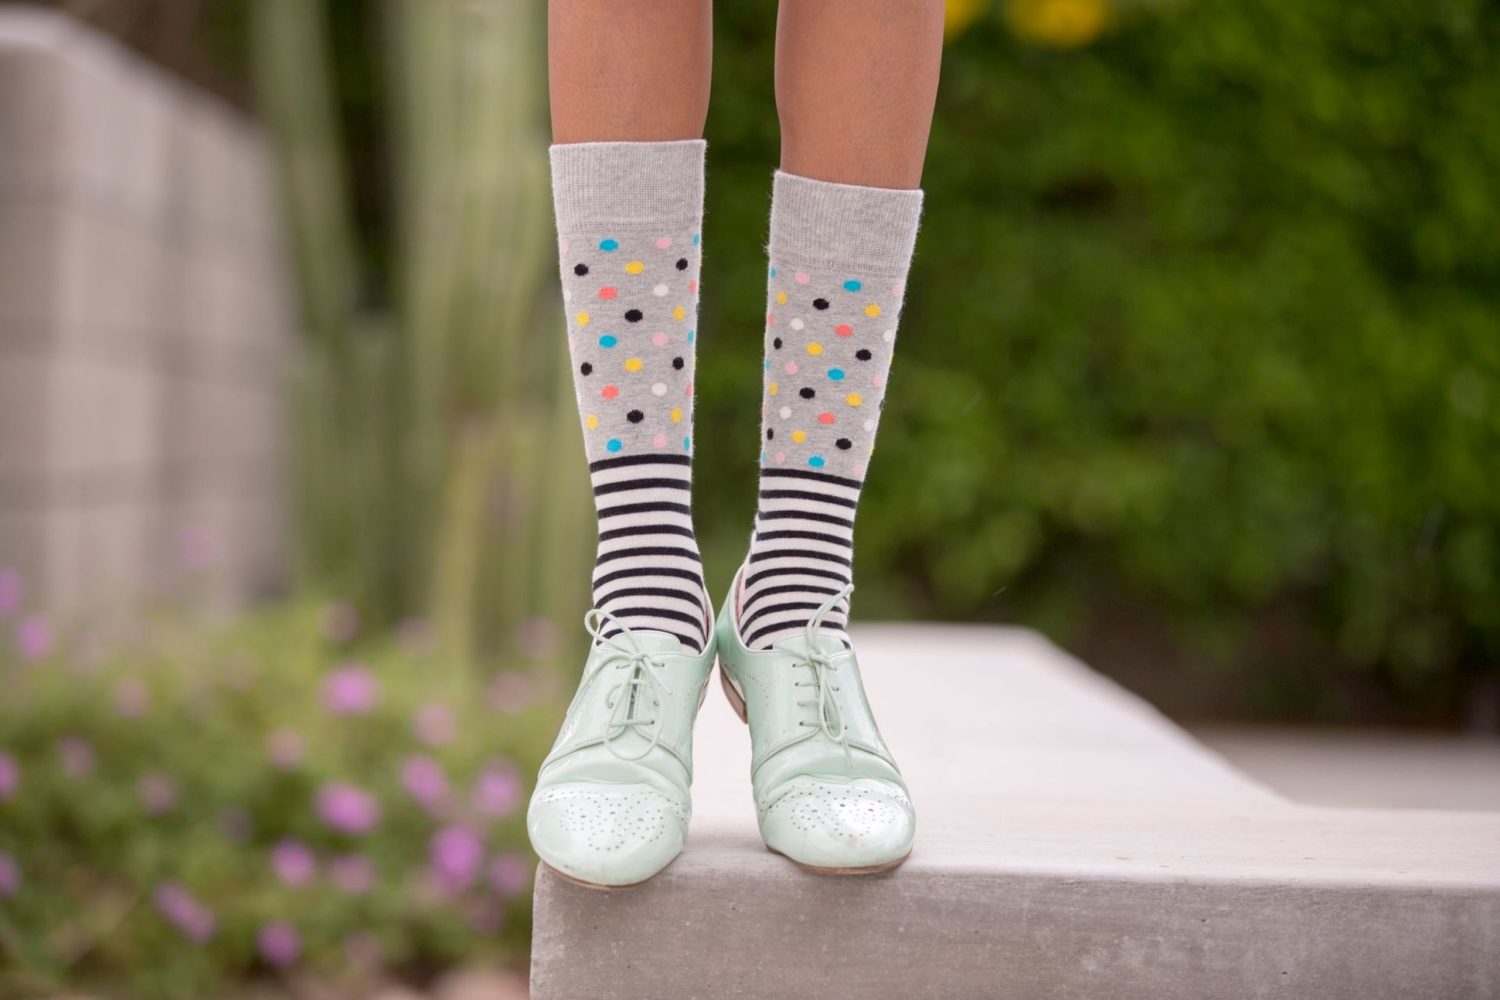 Wearing socks. Модные носки. Носки с цветочками. Счастливые носки. Модные носки на лето.